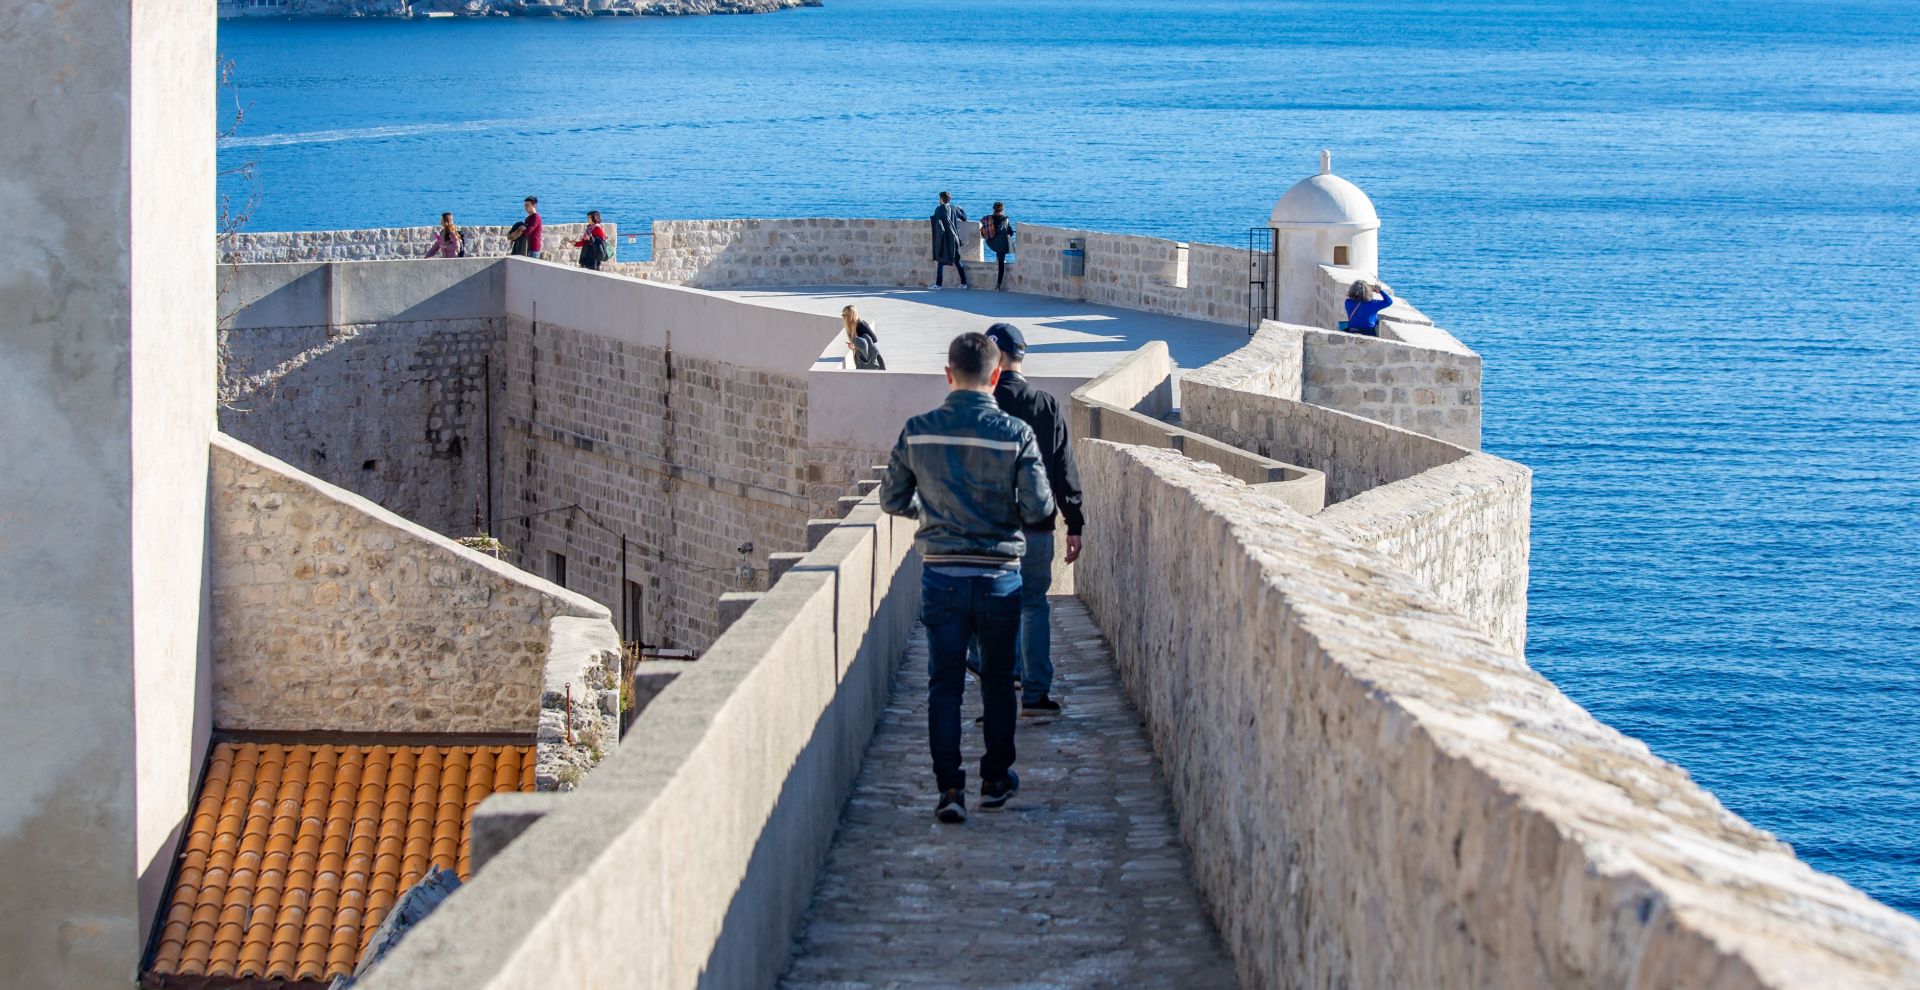 Dubrovnik: Šetnja gradskim zidinama i pogled na staru gradsku jezgru 27.12.2018., Dubrovacke zidine, Dubrovnik - Setnja gradskim zidinama i pogled na staru gradsku jezgru. Photo: Grgo Jelavic/PIXSELL